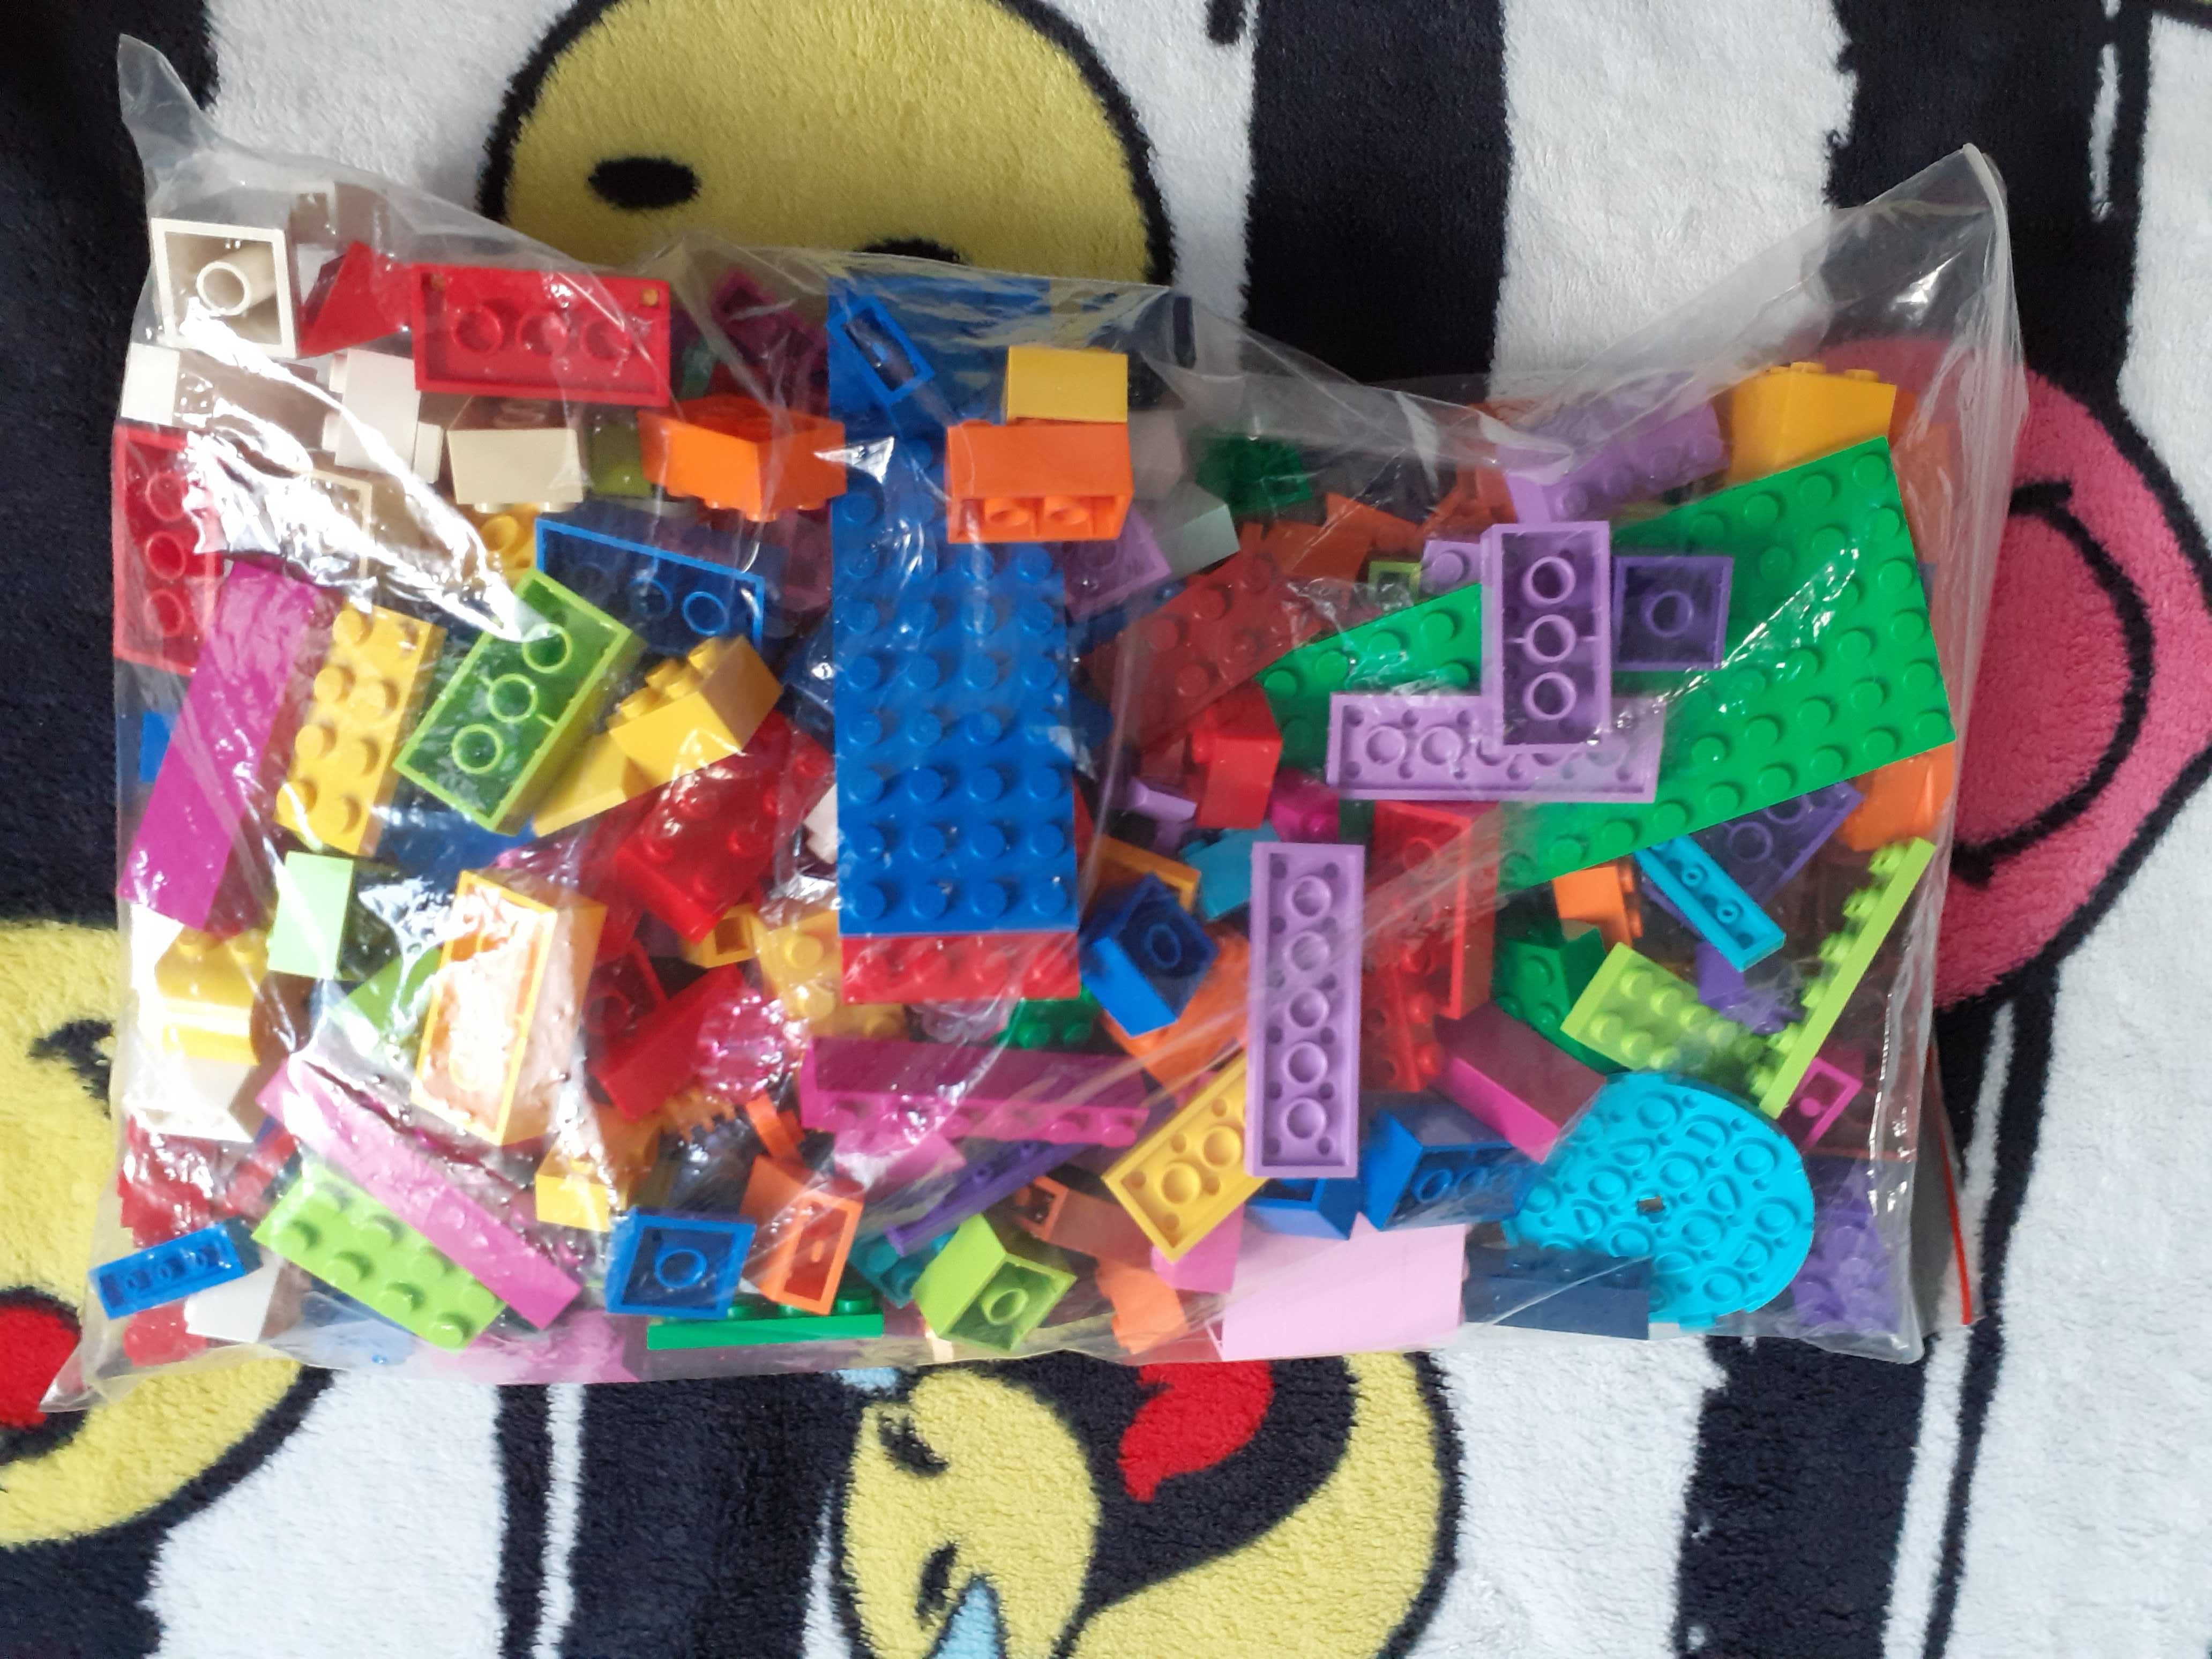 LEGO Classic 10695 - Kreatywny budowniczy